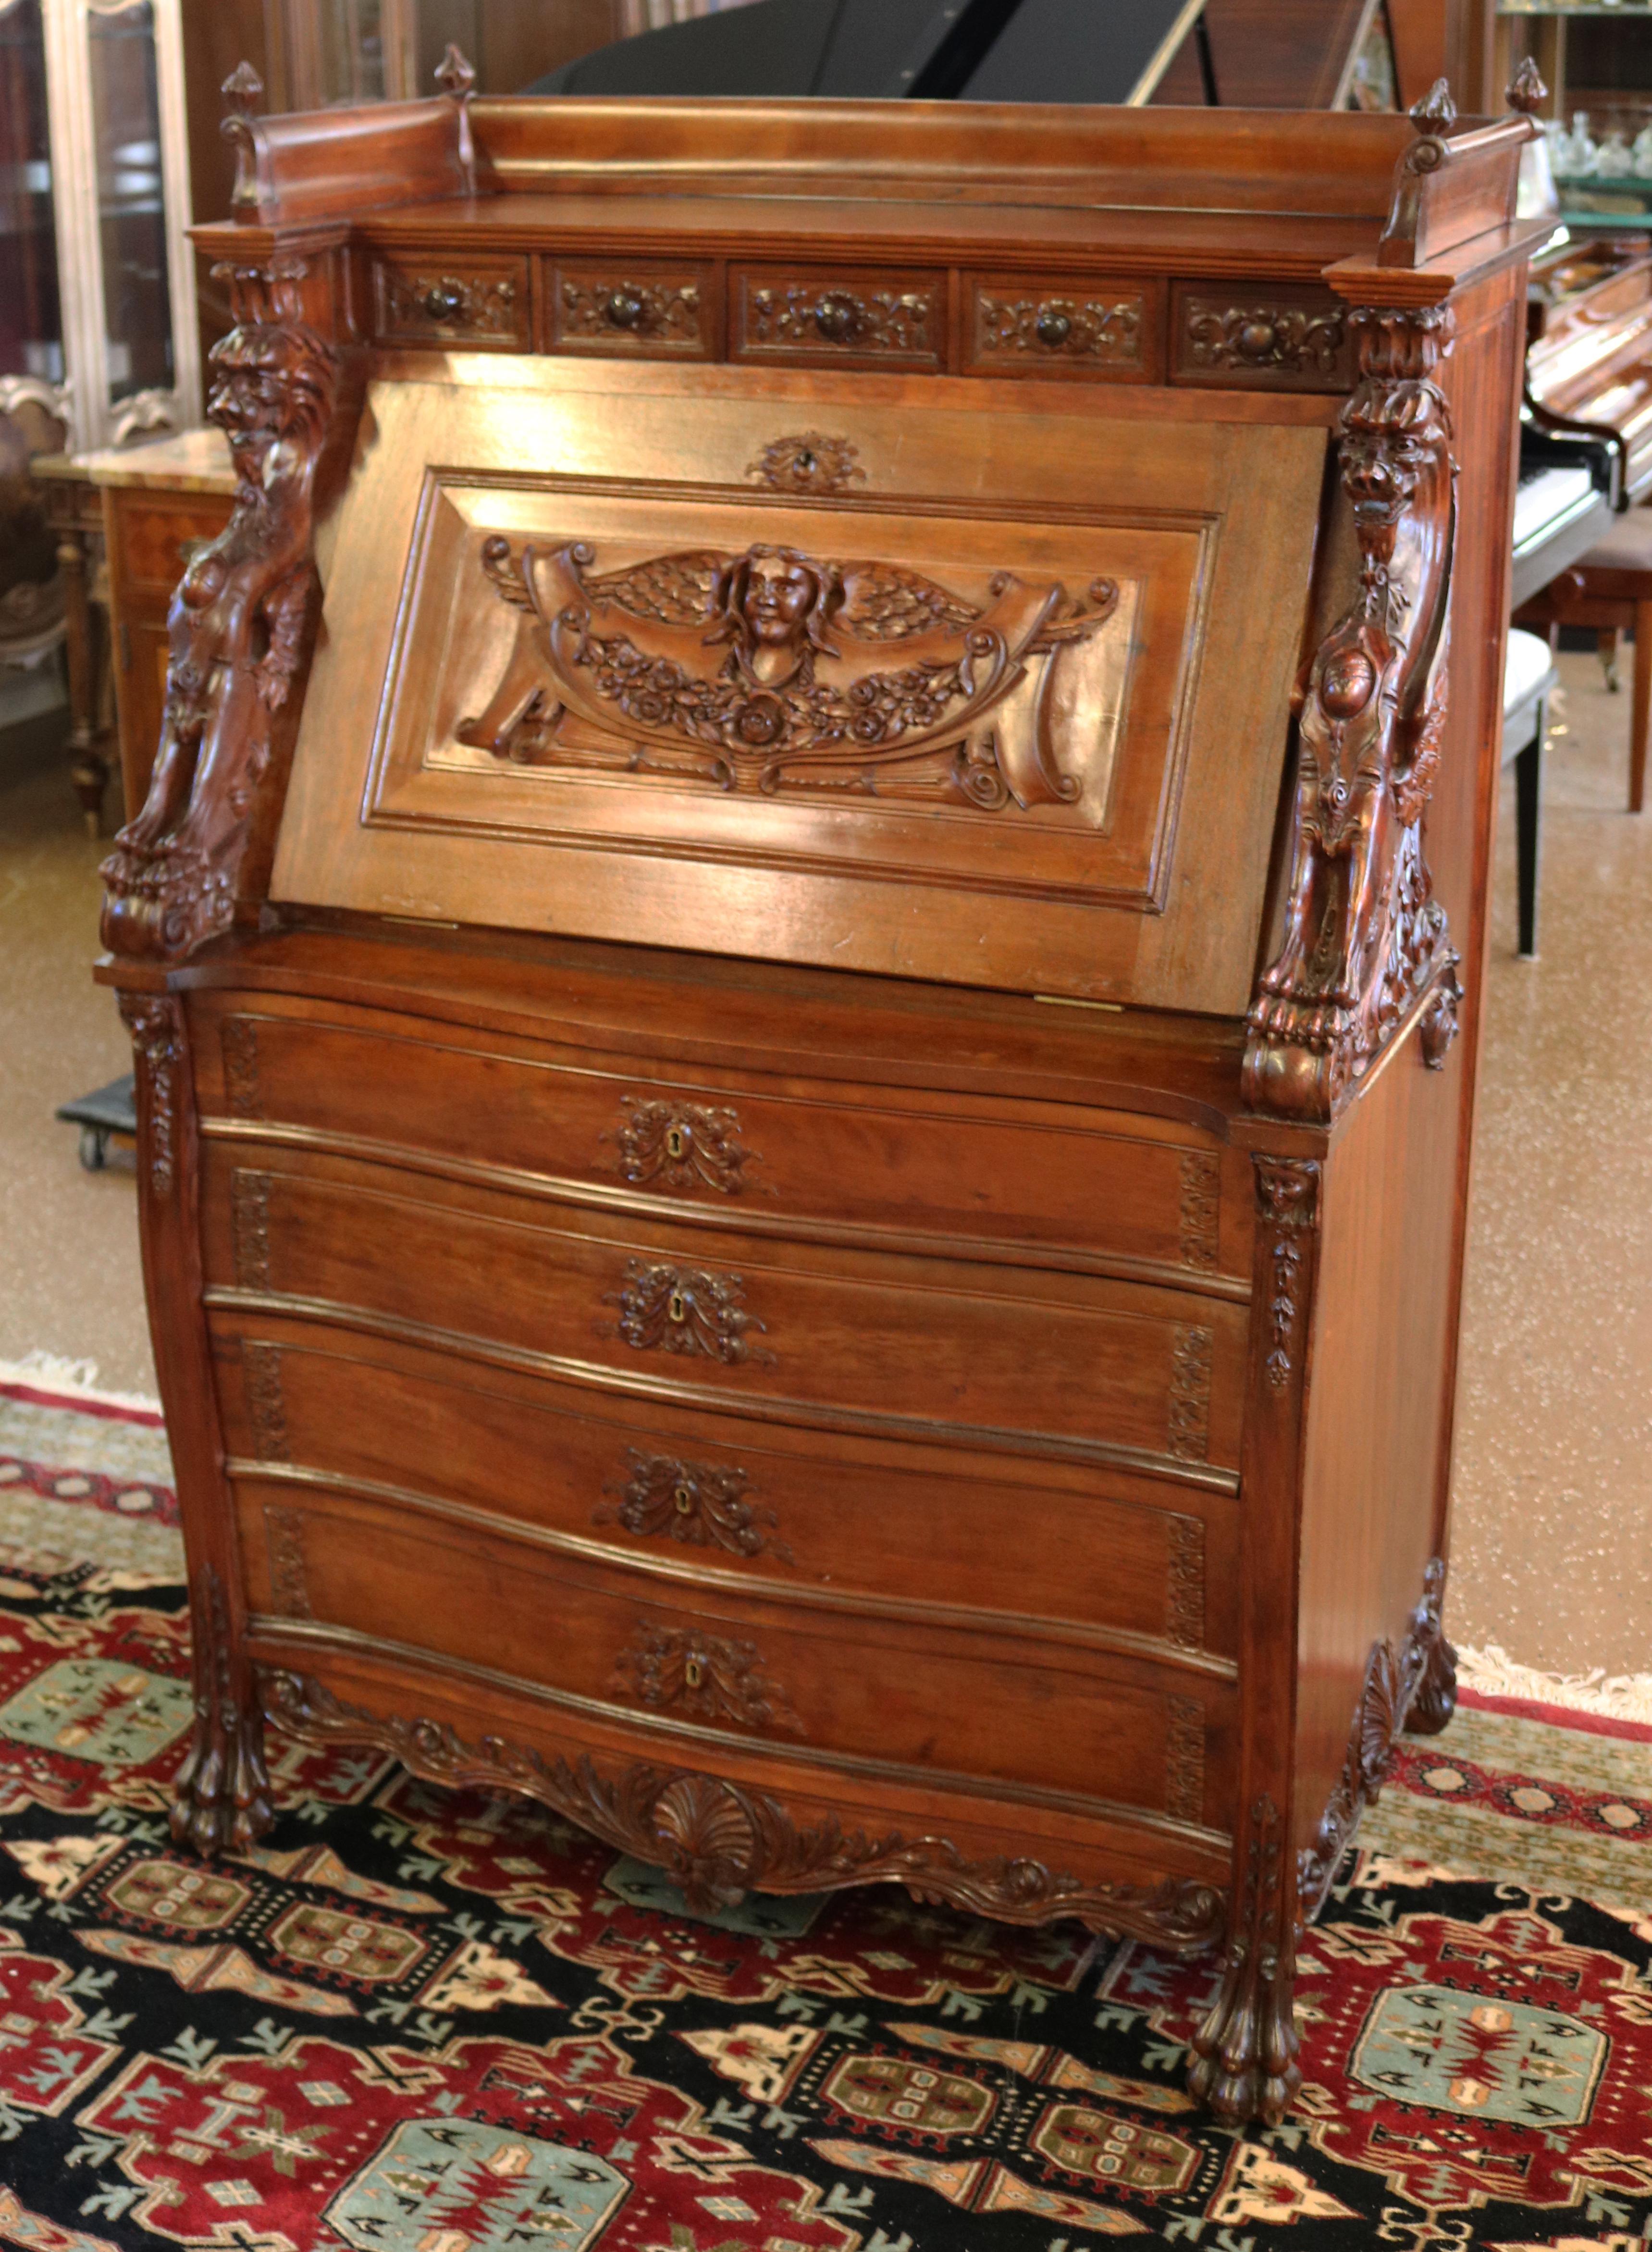 Dieser Schreibtisch mit schräger Front aus dem späten 19. Jahrhundert wurde in den USA hergestellt, höchstwahrscheinlich von R.J. Horner aus NYC. Der Schreibtisch ist aus feinem Mahagoni gefertigt und hat zwei Greifen, die jede Seite der Klappe